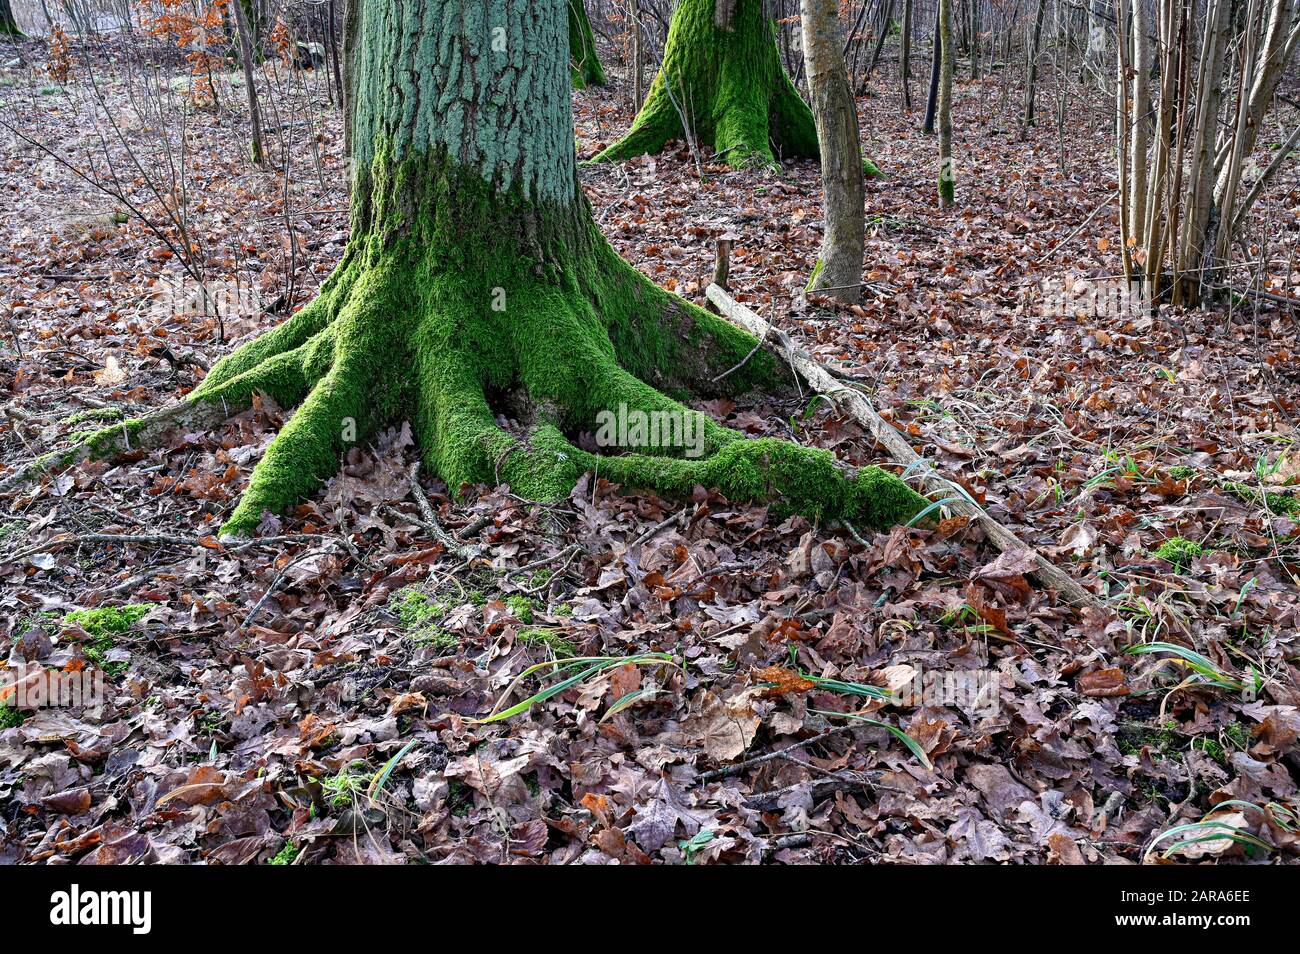 árbol antiguo con musgo verde en la corteza Foto de stock